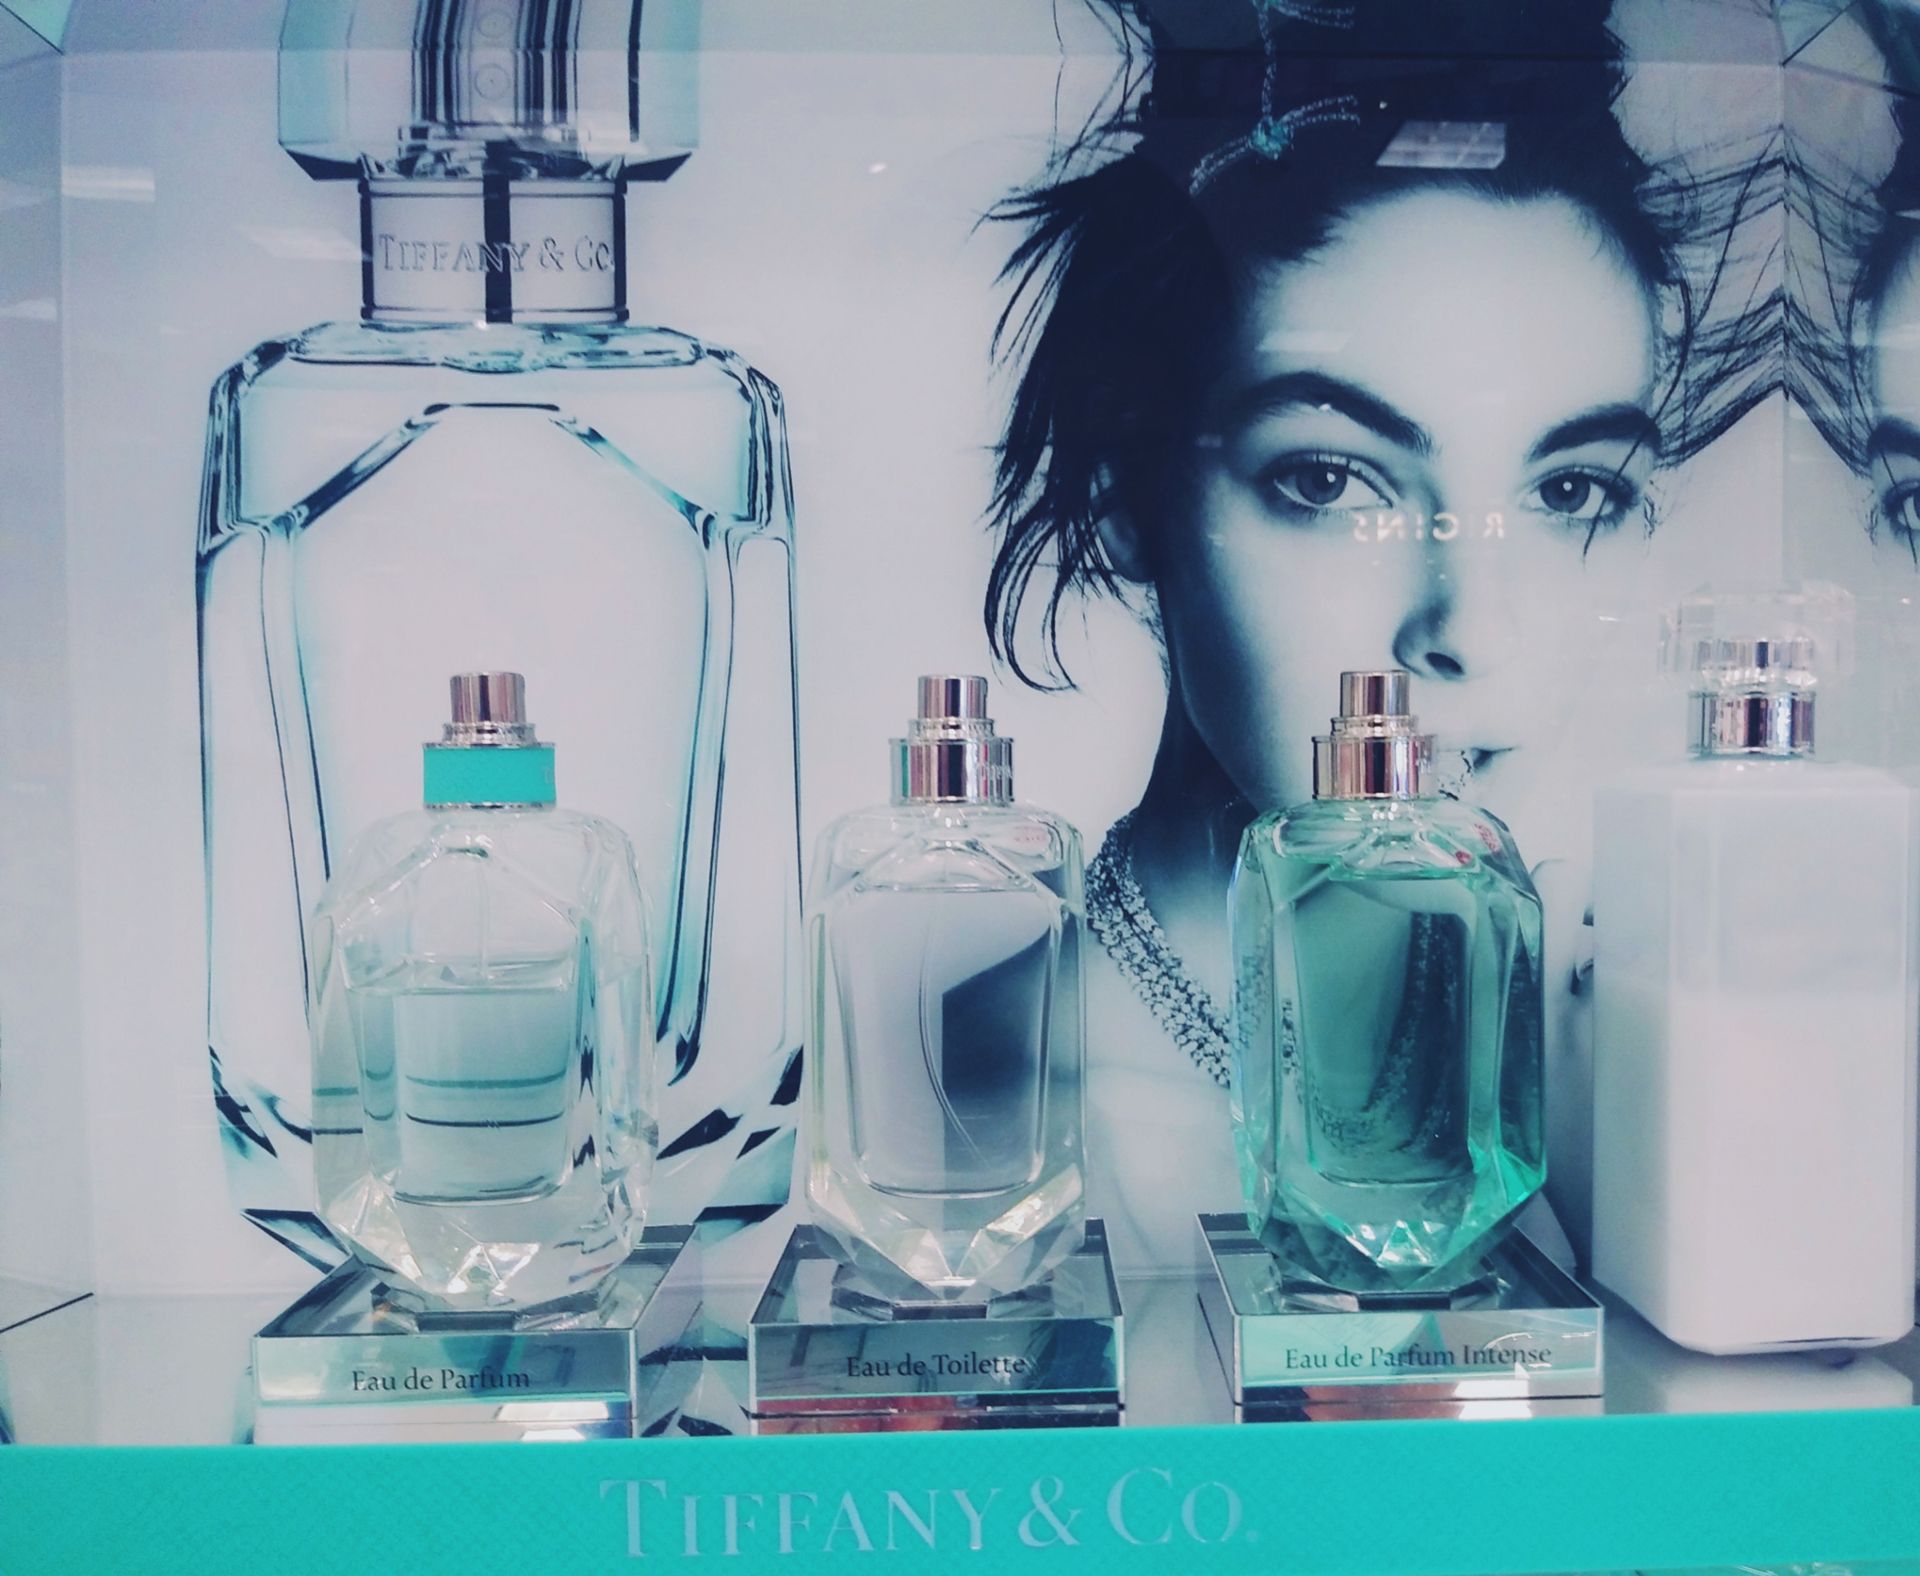 macy's tiffany perfume gift set